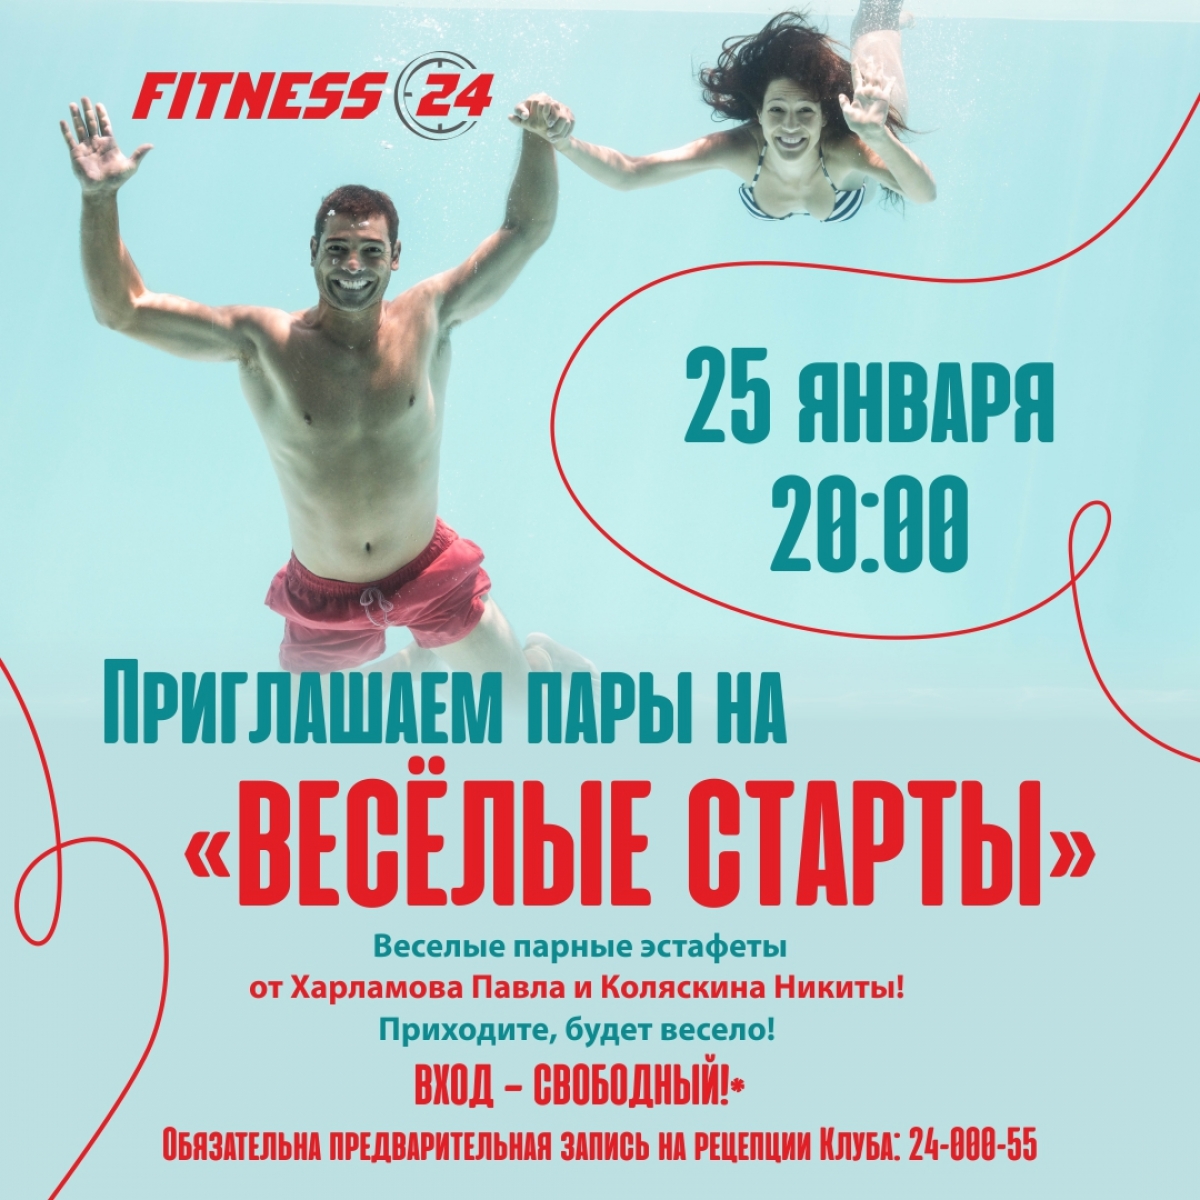 Весёлые старты в Fitness24 Лиговский!